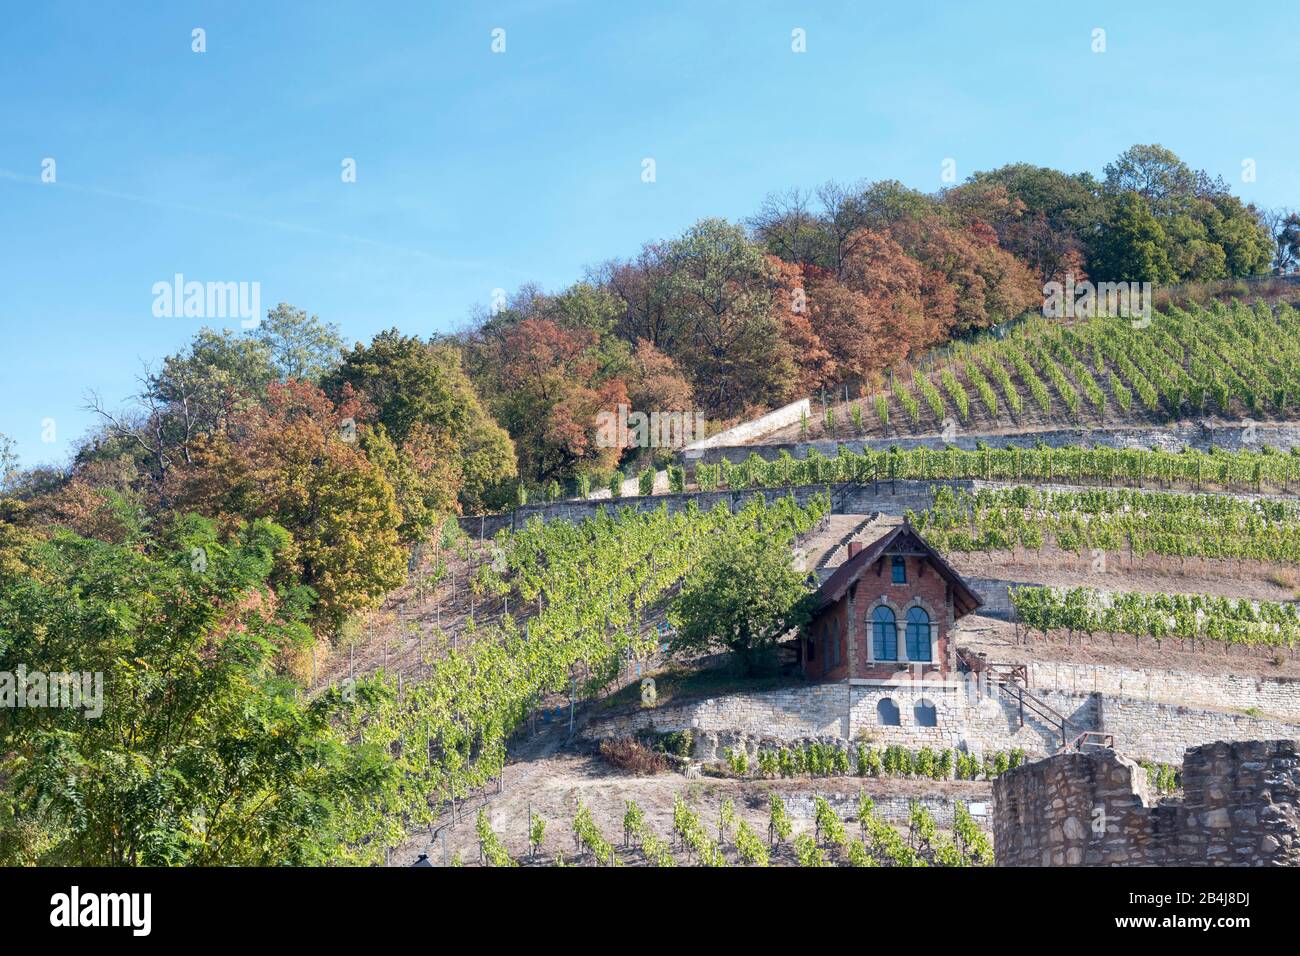 Deutschland, Sachsen-Anhalt, Freyburg, Blick auf einen Weinberg à Freyburg, dem nördlichsten Weinbaugebiet Deutschlands. Banque D'Images